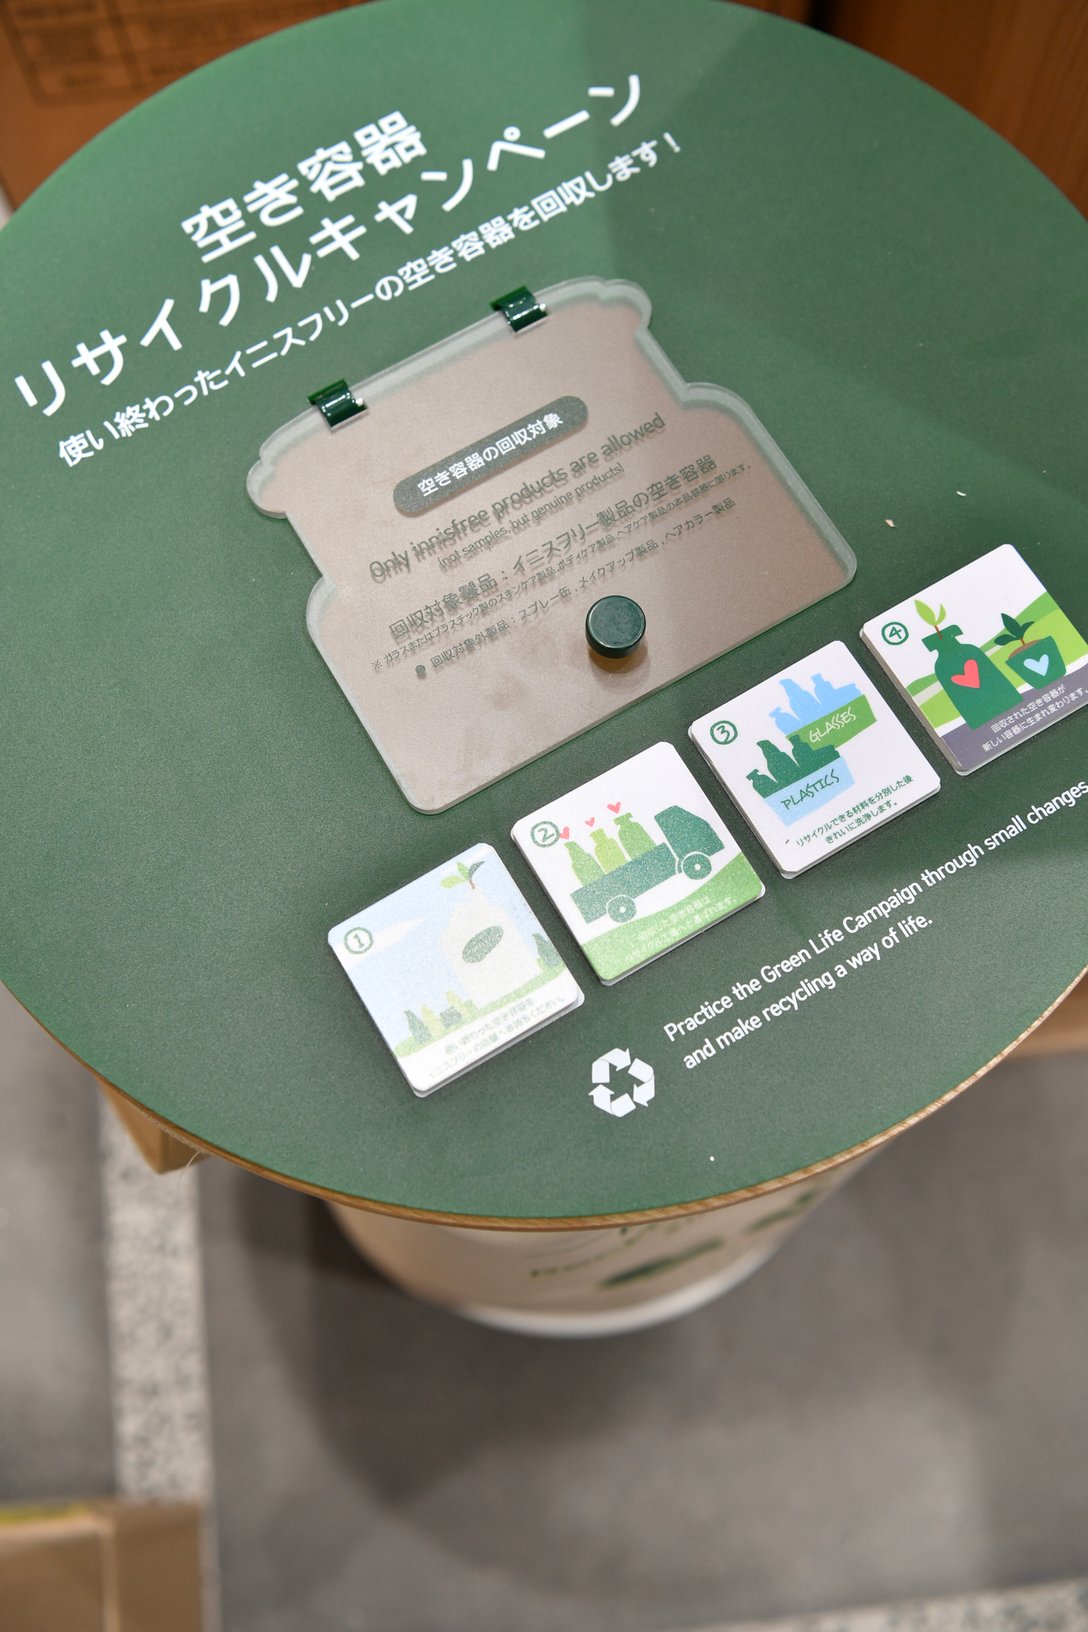 韓国発の化粧品ブランド「イニスフリー」の空き容器回収ボックス